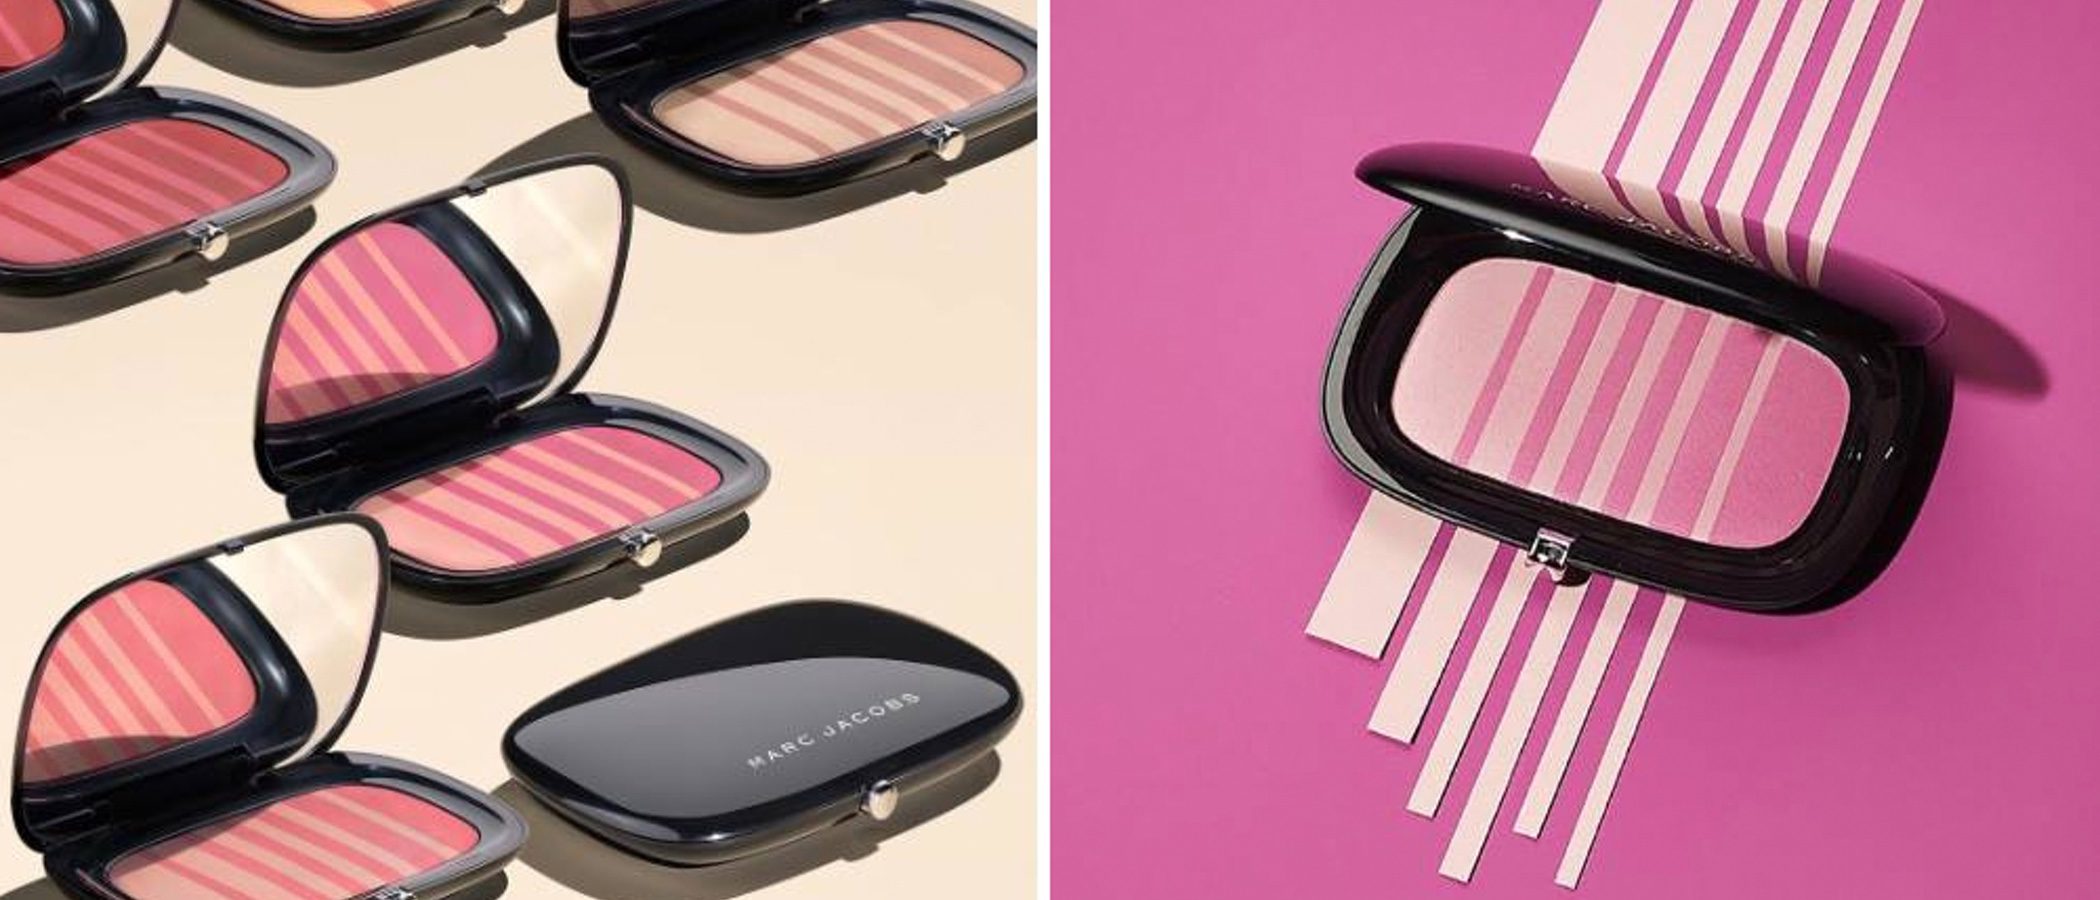 Marc Jacobs lanza su nueva gama de coloretes 'Air Blush Soft Glow Duo' para Sephora